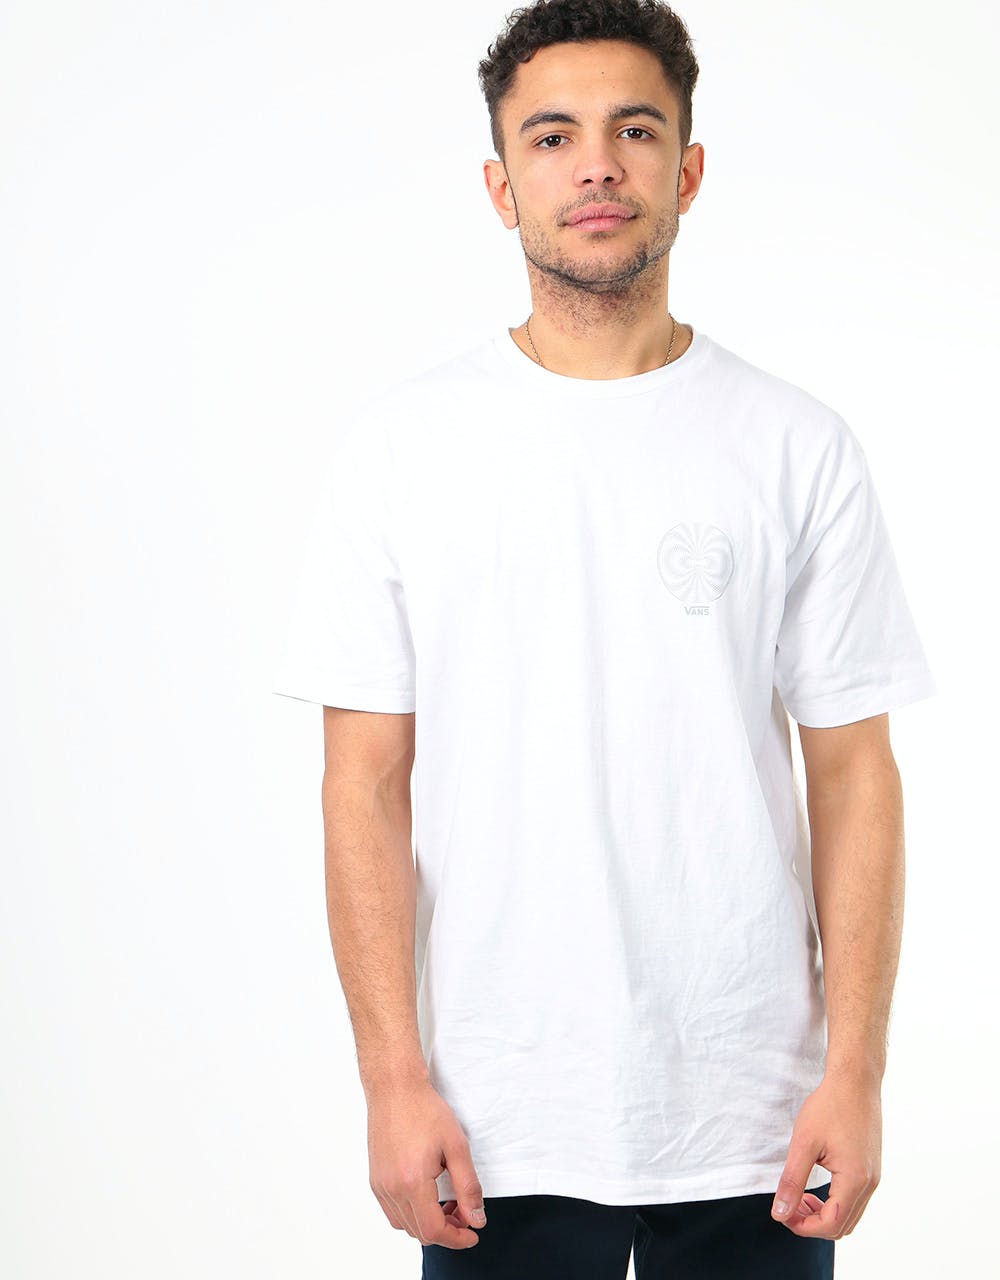 Vans Pro Skate Reflective T-Shirt - White